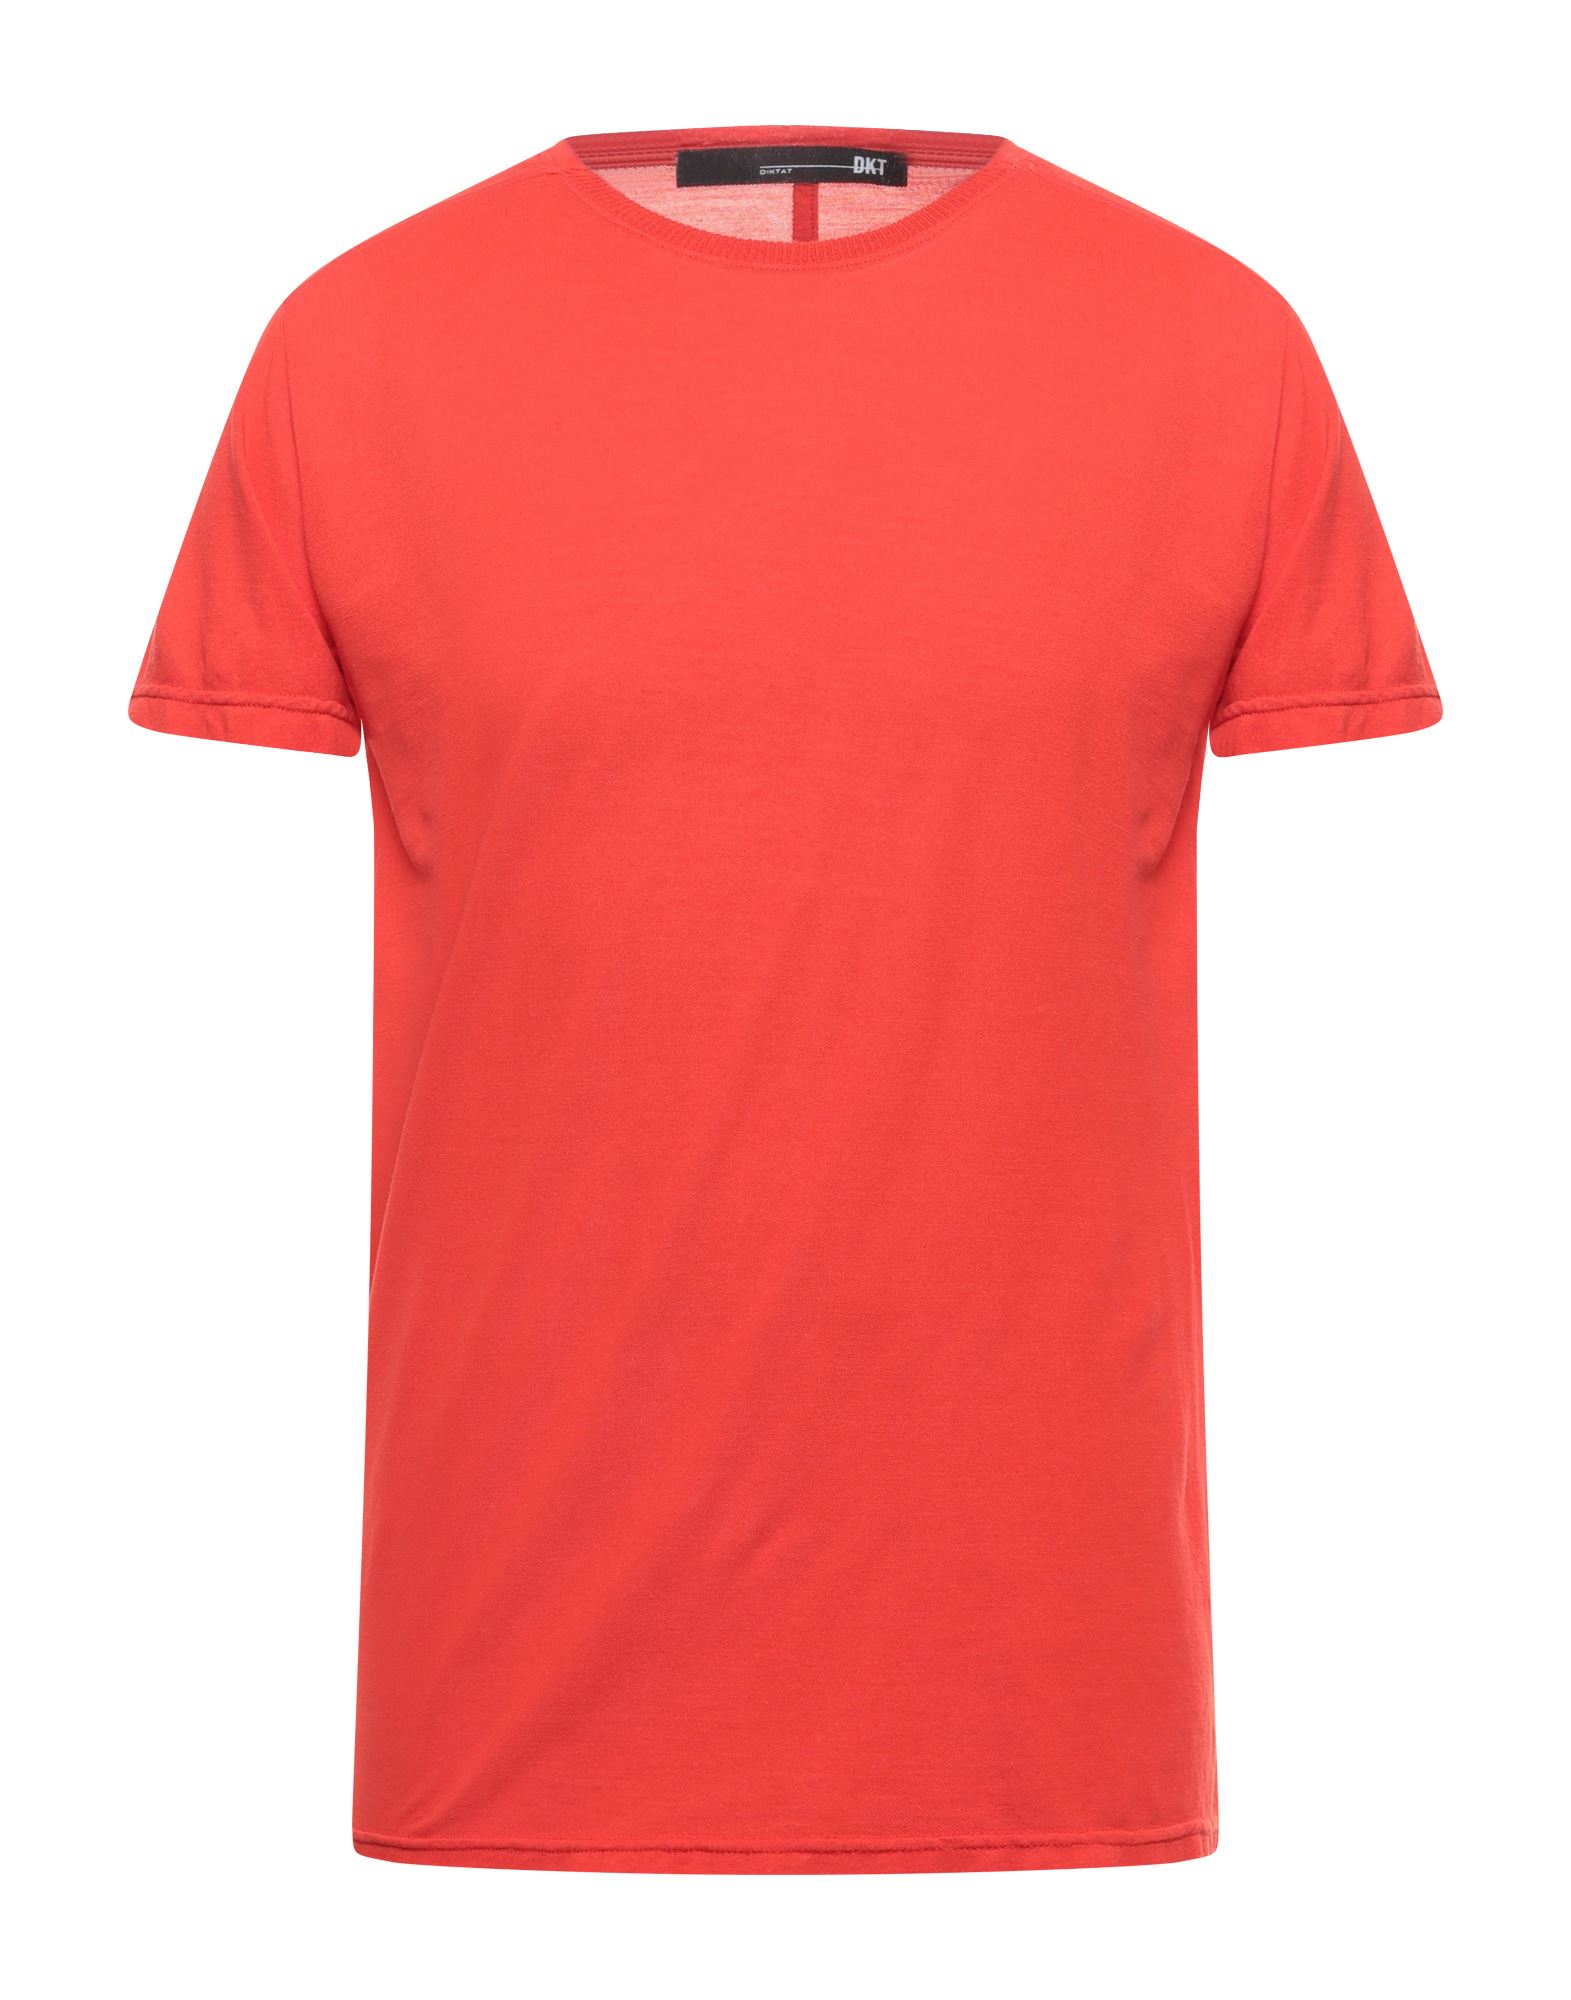 DIKTAT T-shirts Herren Rot von DIKTAT